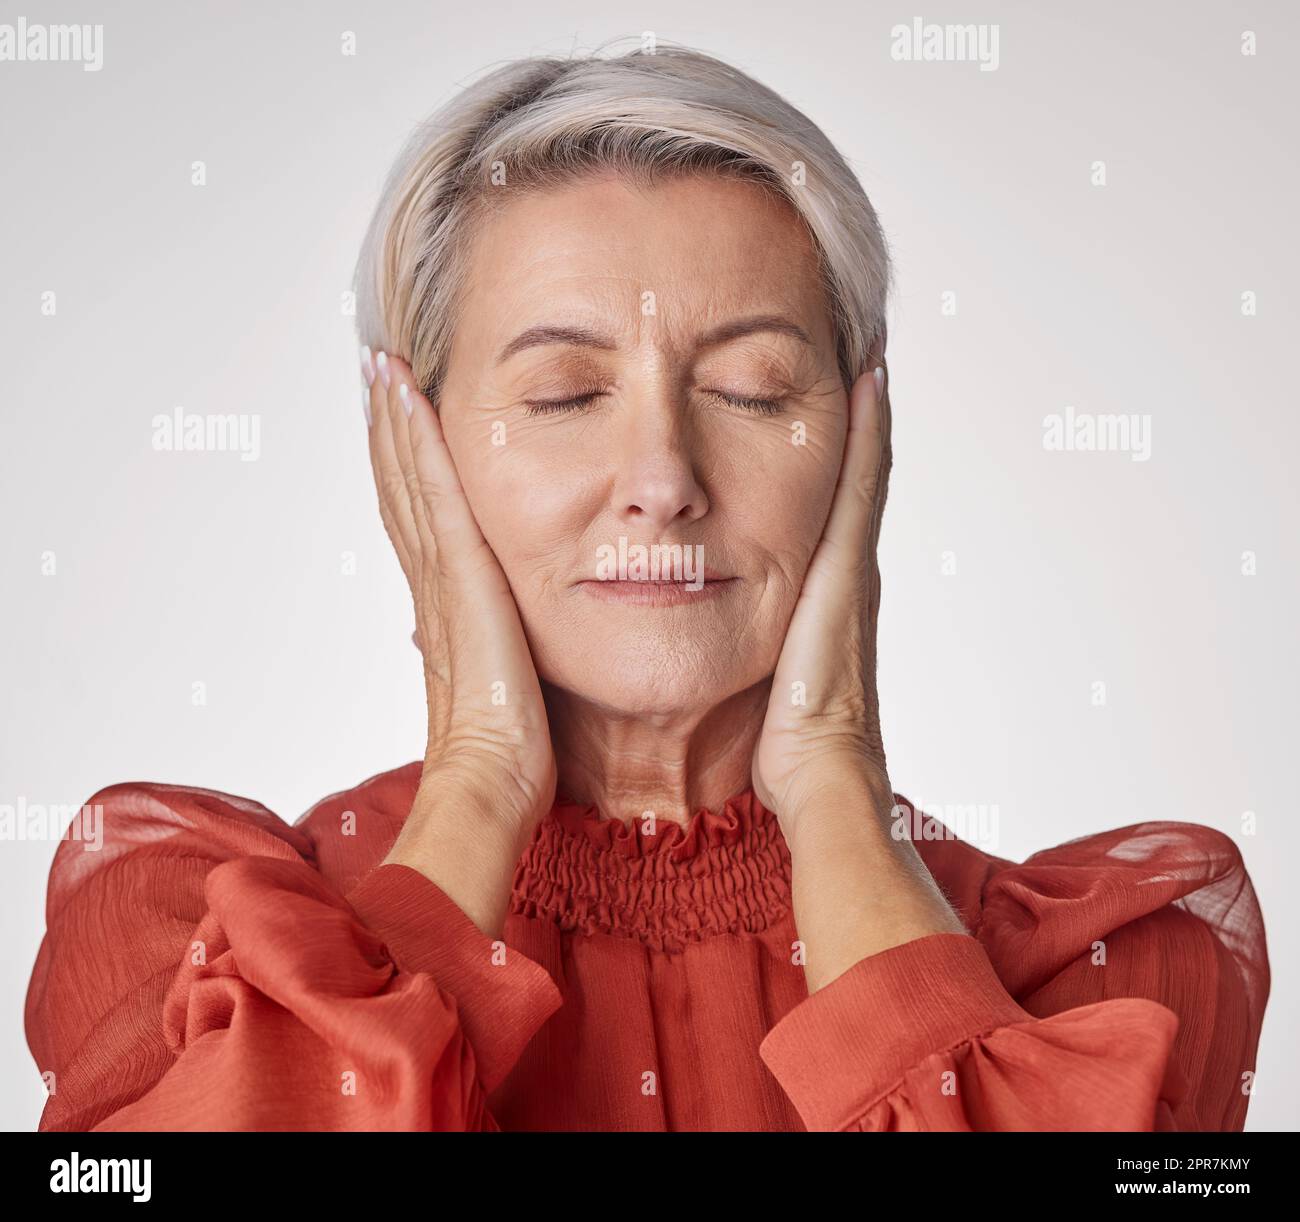 Eine reife Frau, die Kopfschmerzen hat und gestresst aussieht, während sie vor einem grauen Hintergrund posiert. Alternde Frau, die Angst und Angst in einem Studio erlebt Stockfoto